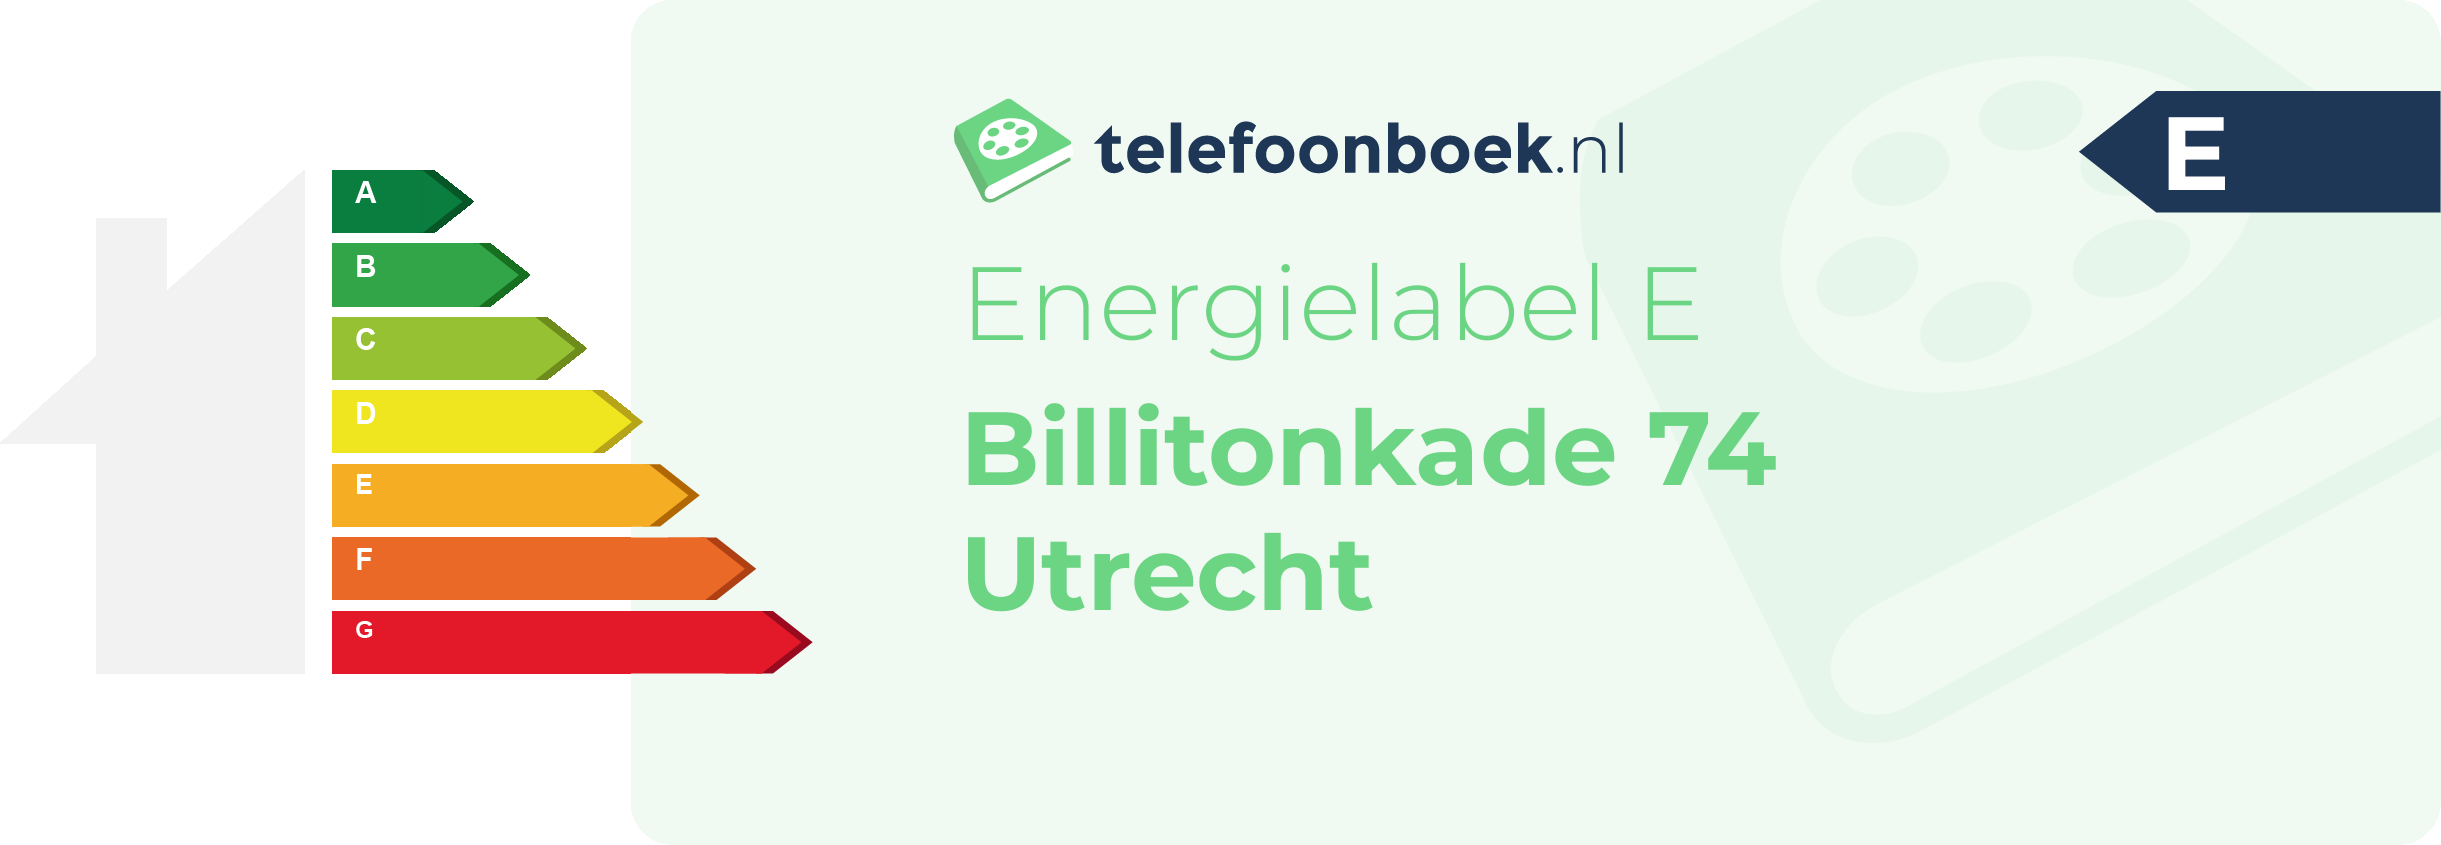 Energielabel Billitonkade 74 Utrecht